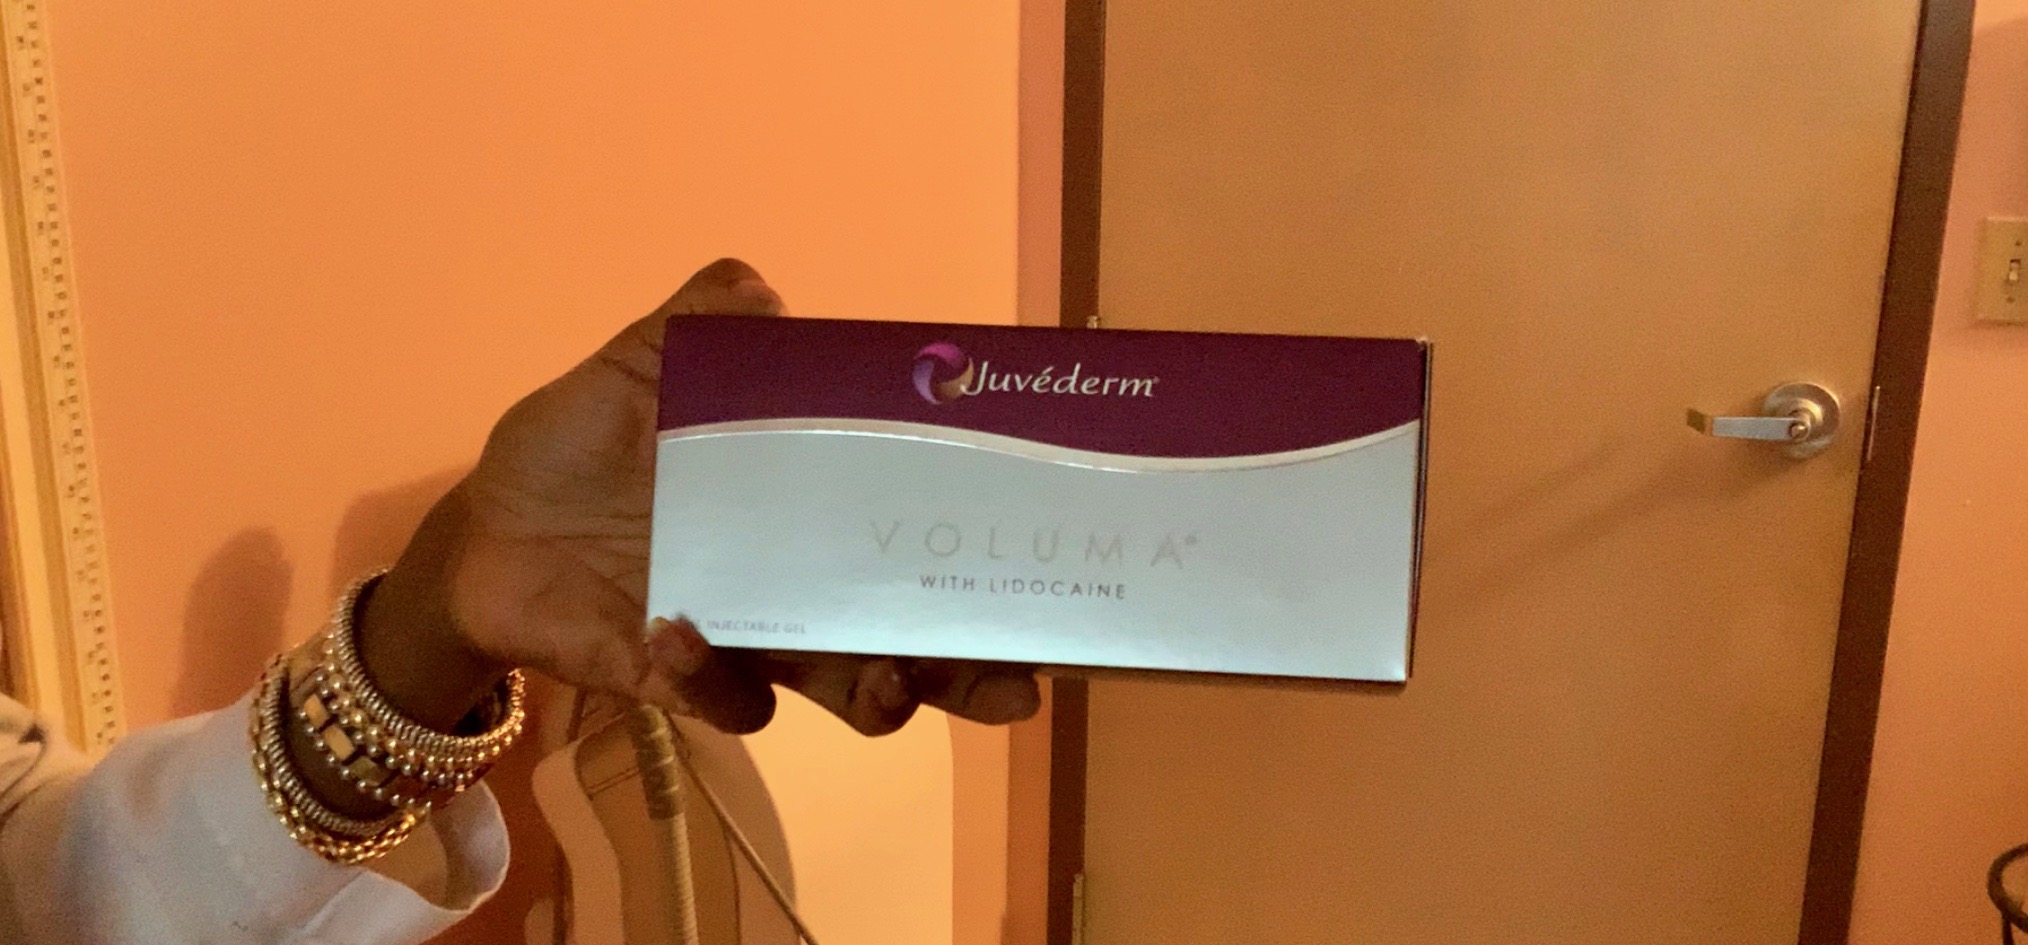 Dr. Claudette Jatto holding Box of Juvéderm